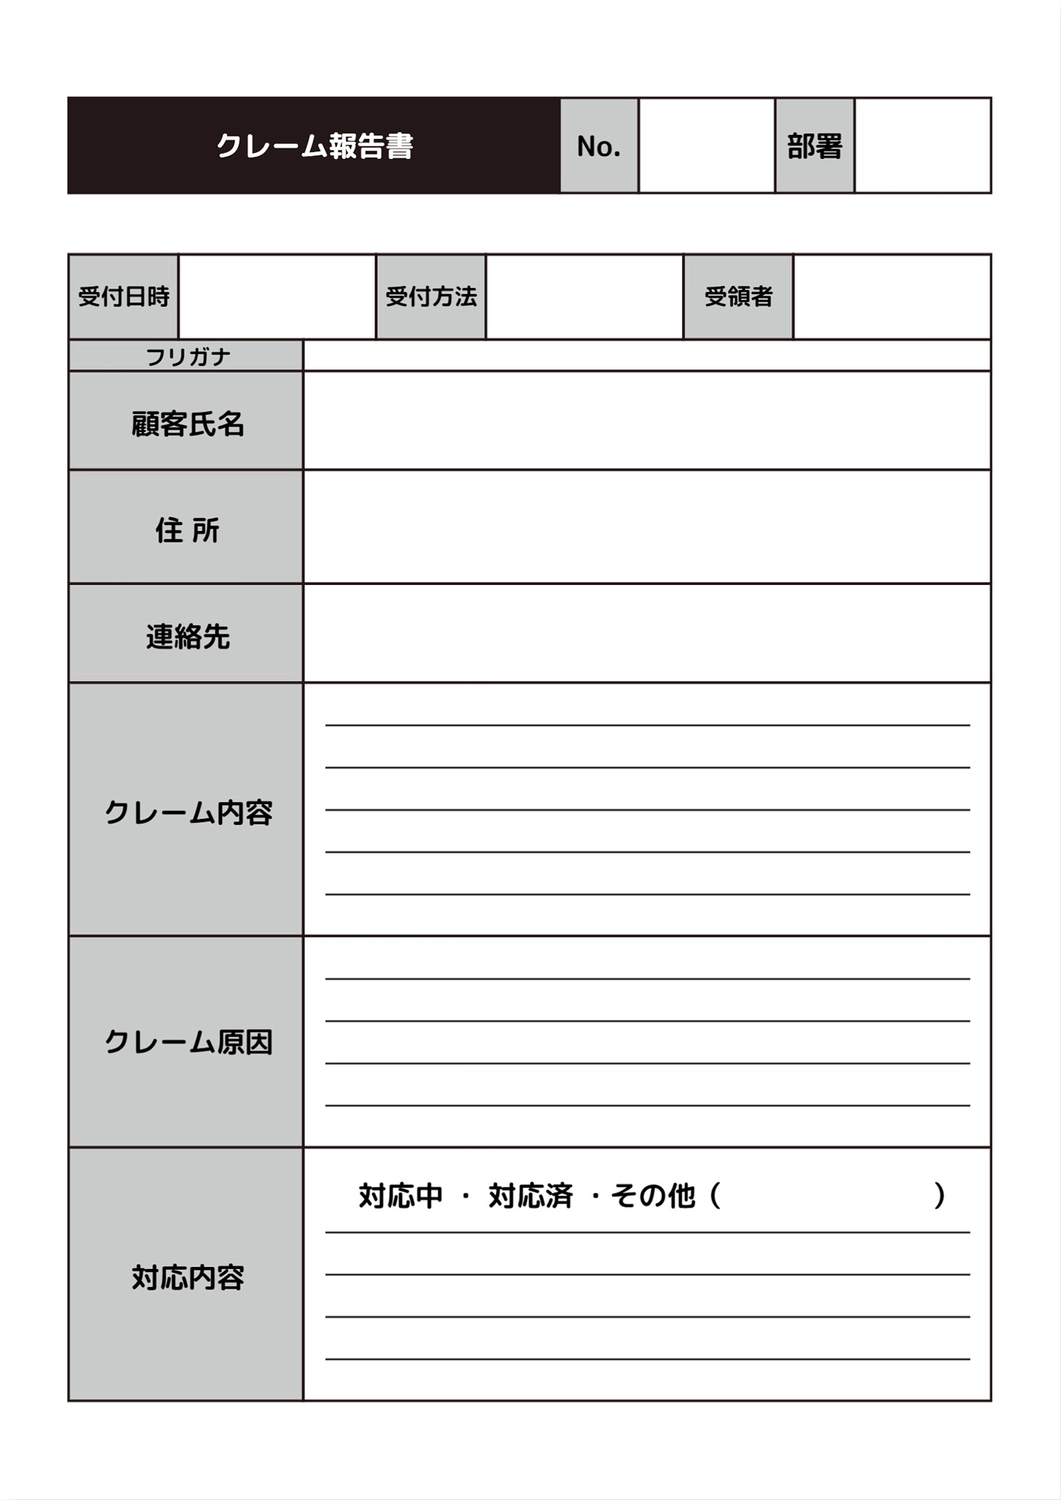 クレーム報告書, ruled line, work, business, A4 template